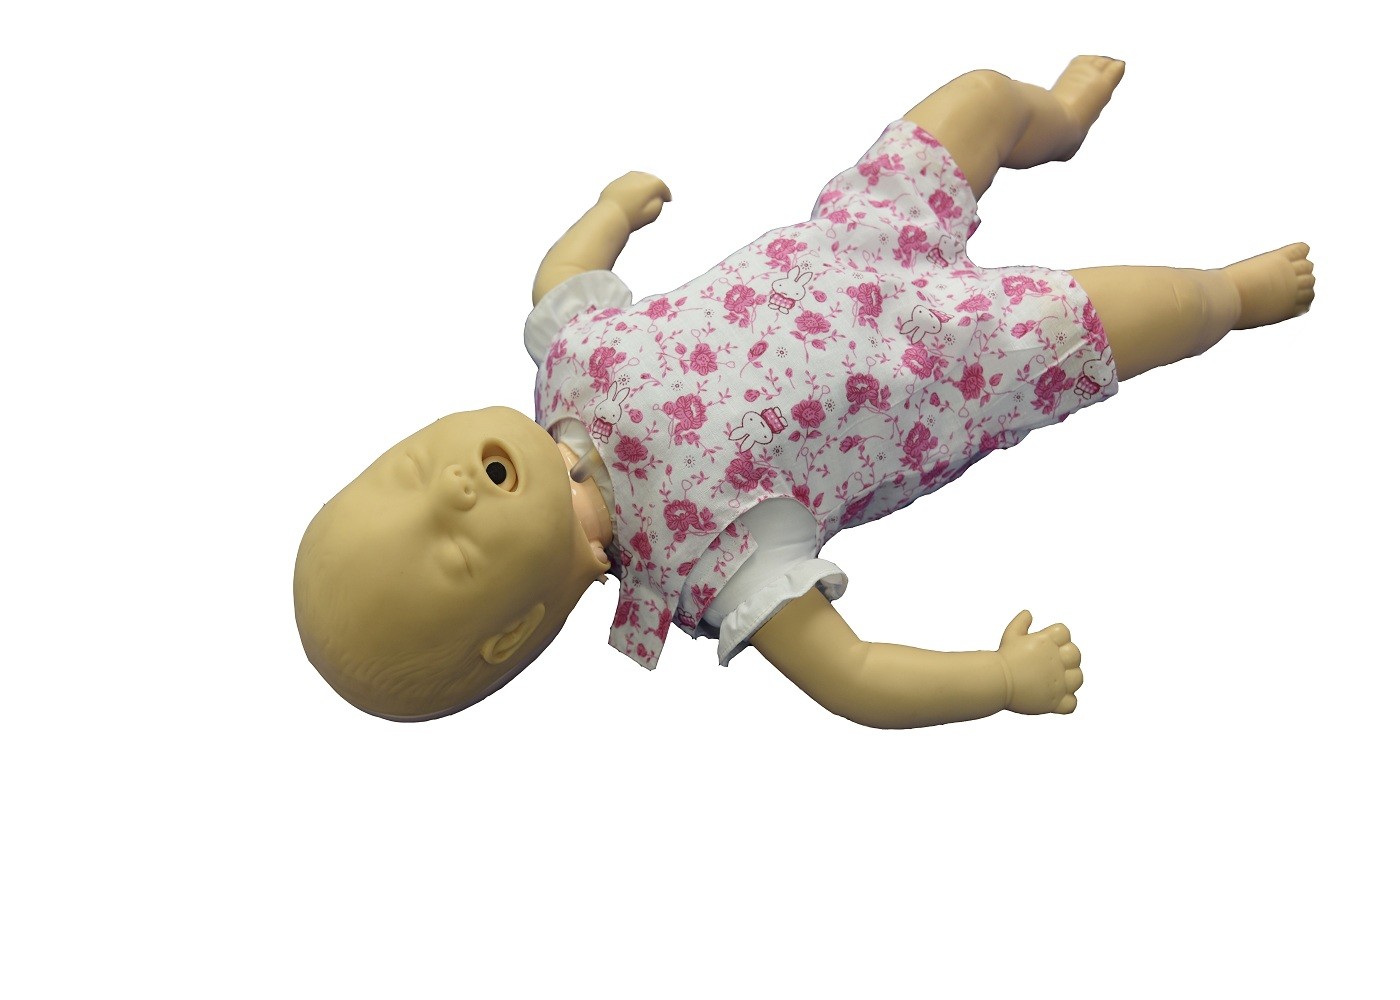 Symulacja dla dzieci z mankietem z CPR Opeartion i niedrożność dróg oddechowych w nagłych wypadkach